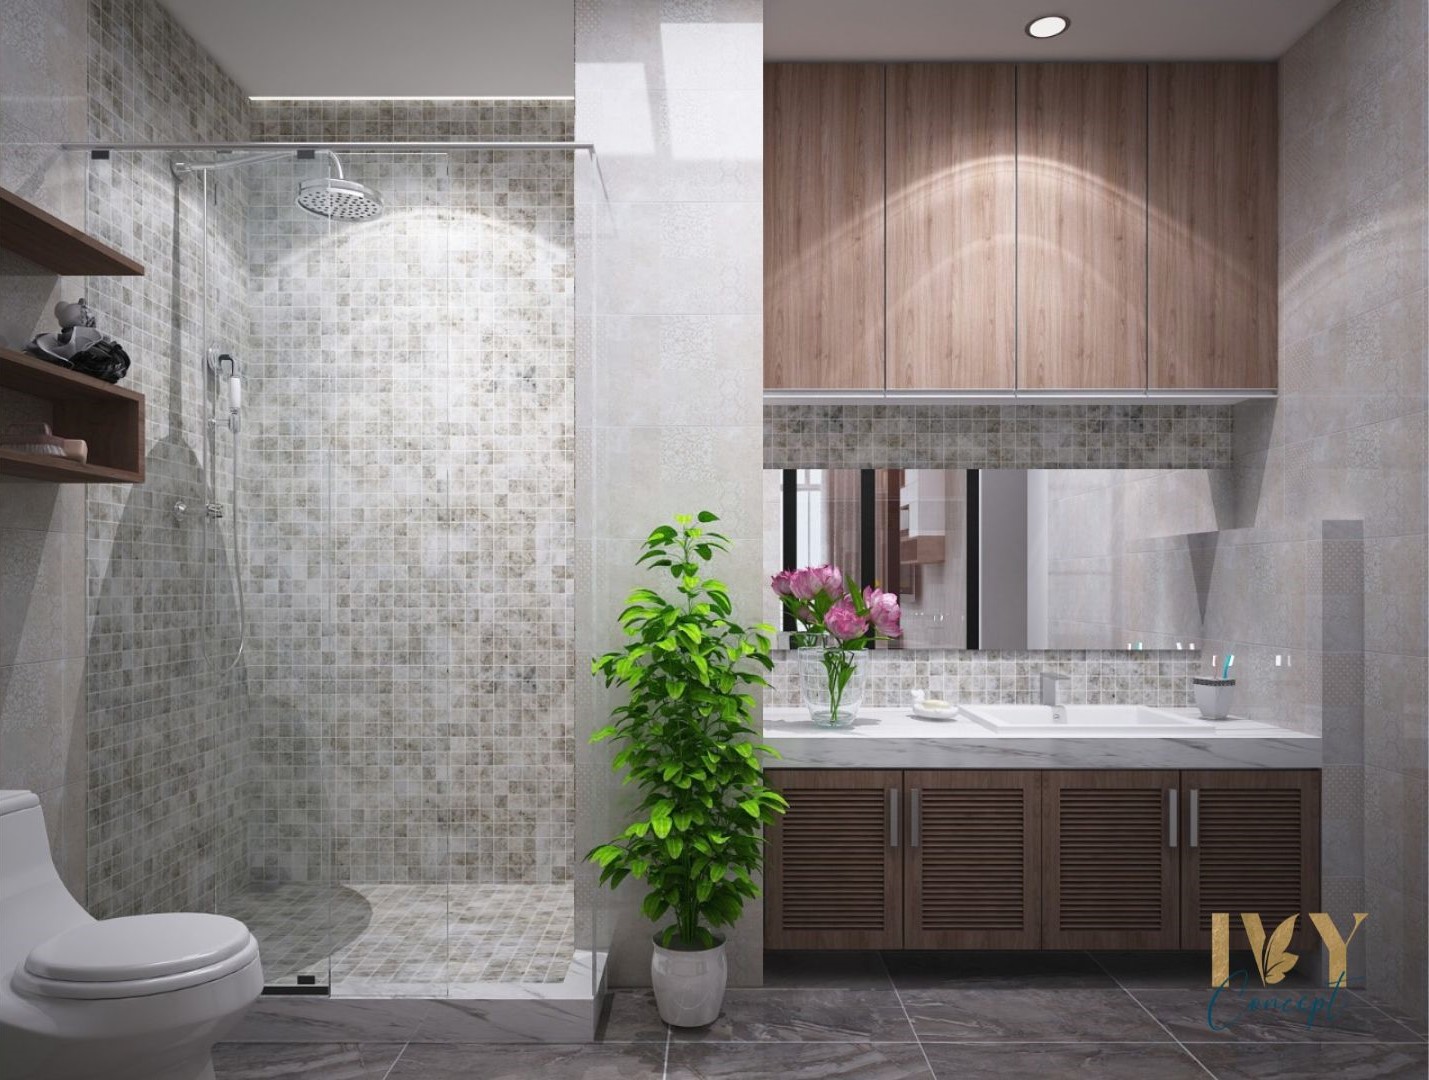 Phòng tắm, phong cách Hiện đại Modern, thiết kế concept nội thất, căn hộ PetroVietnam Landmark